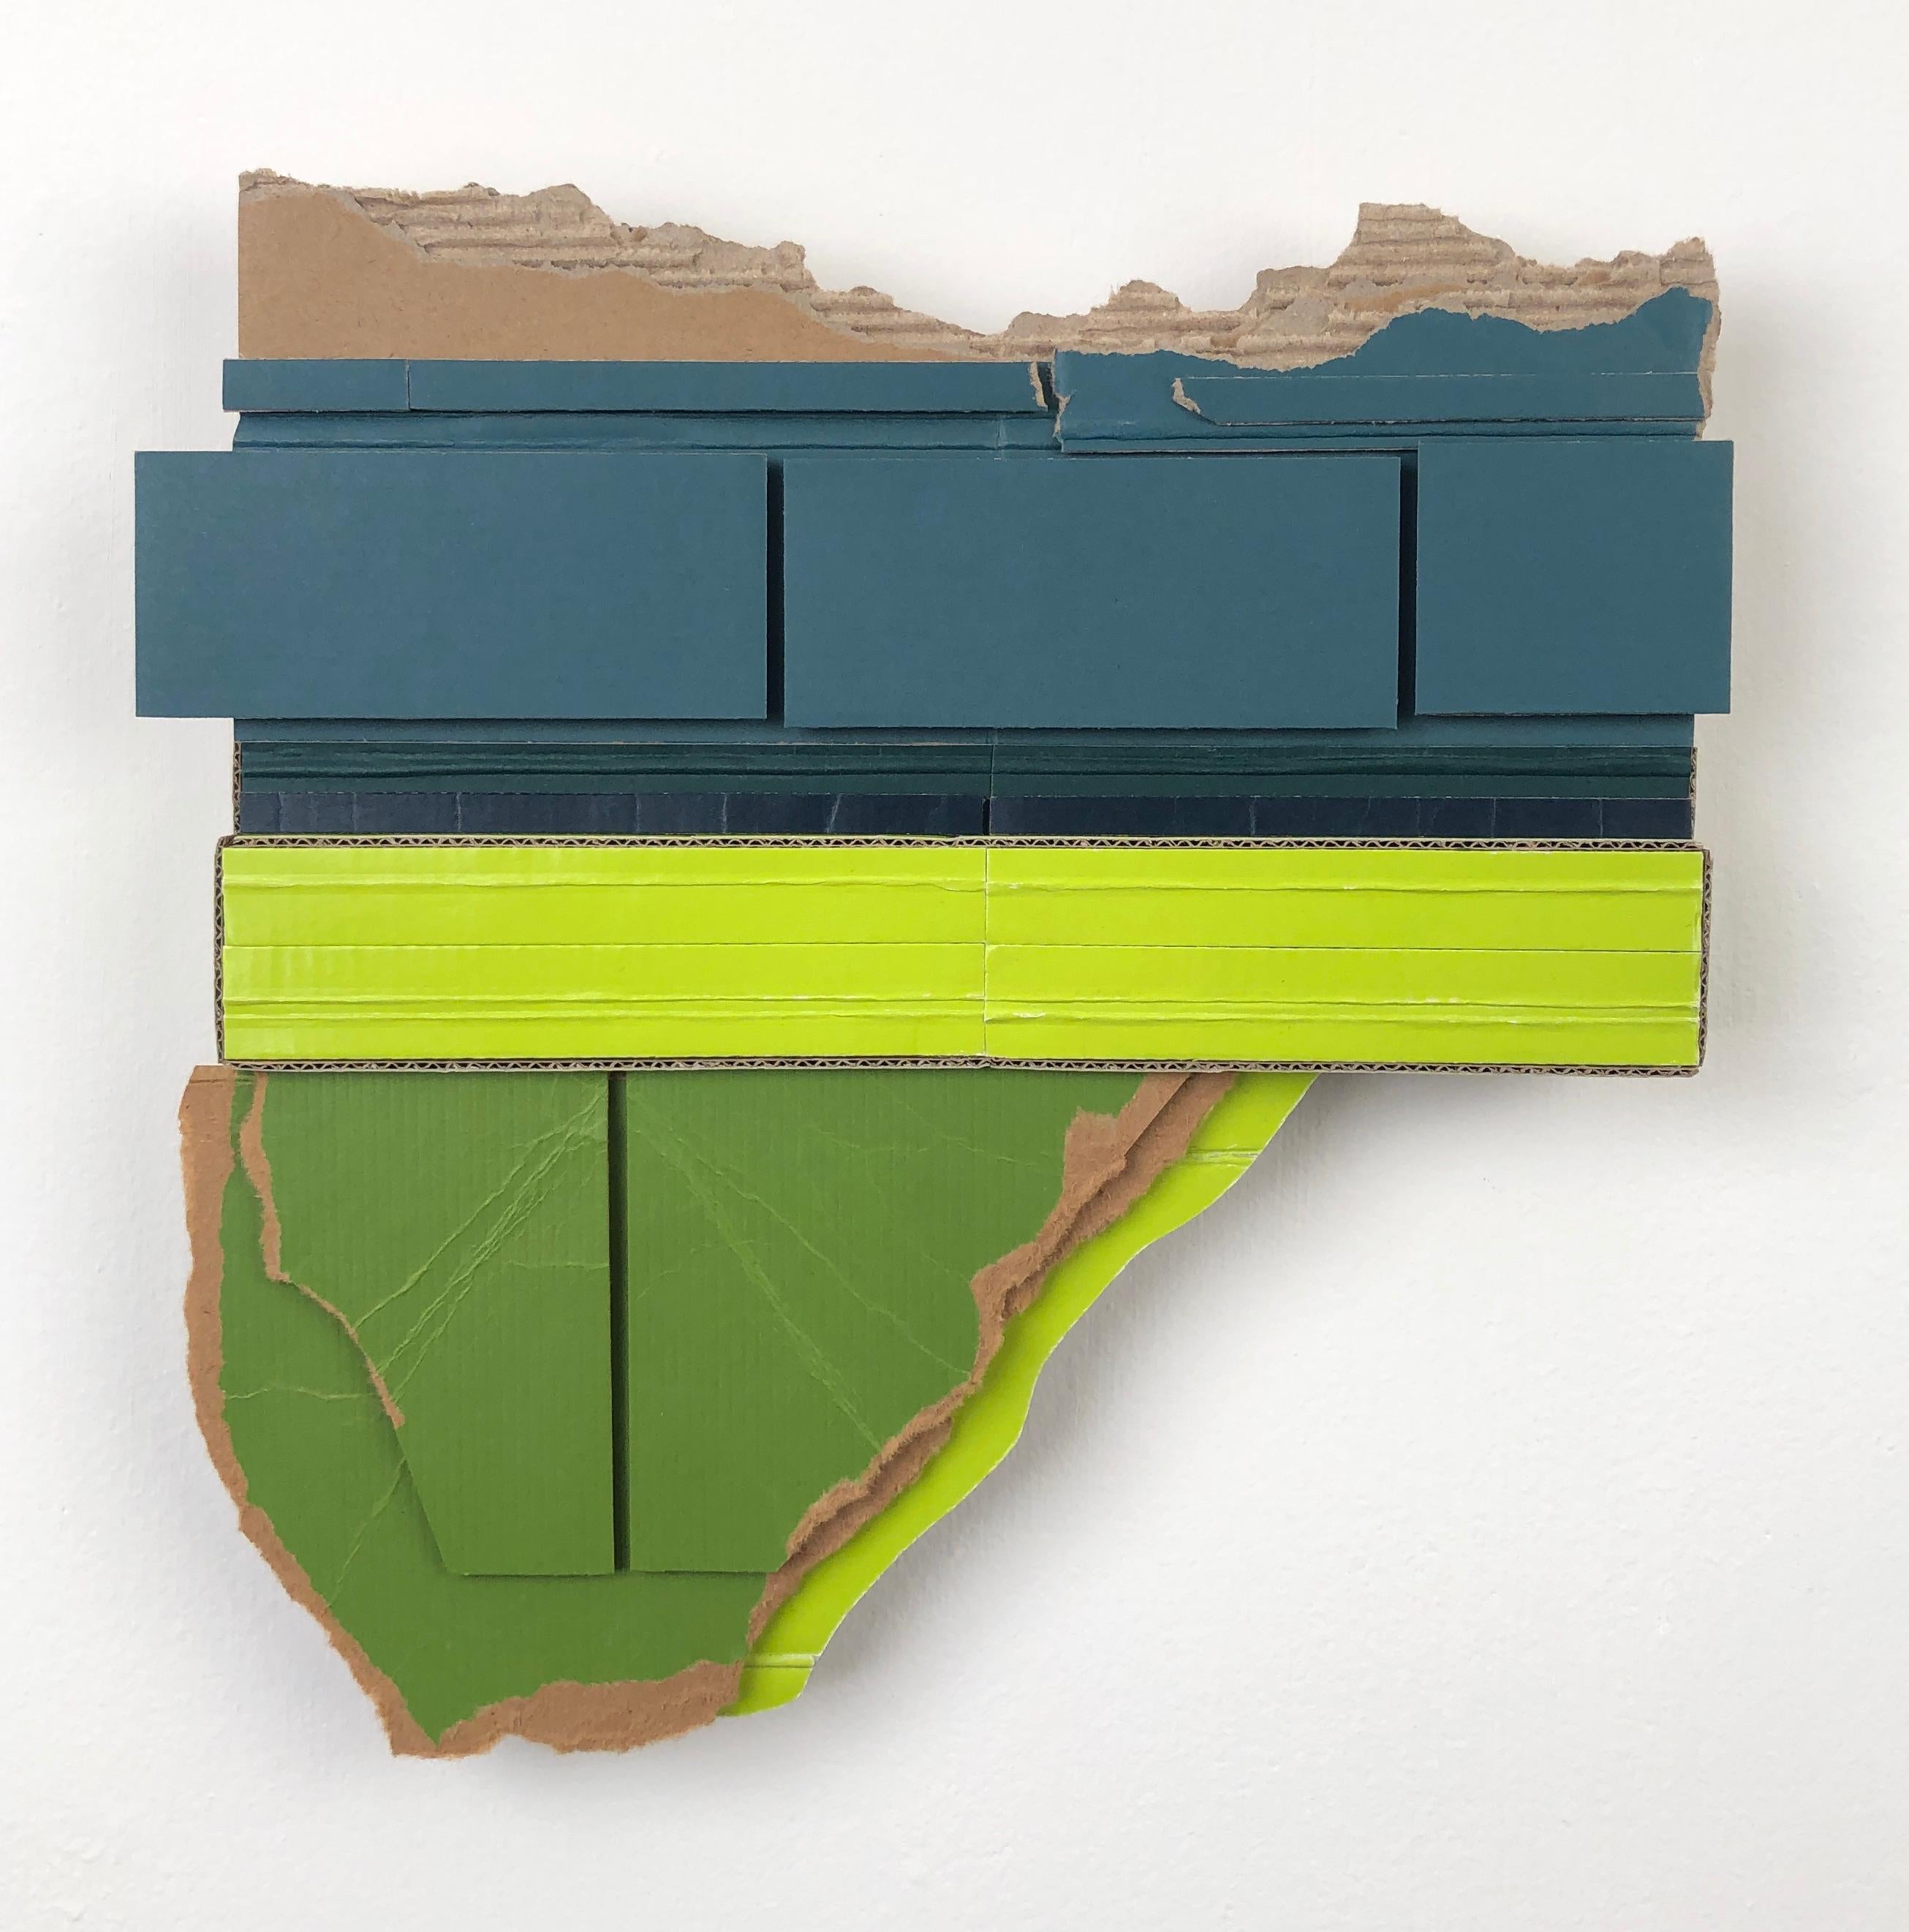 Ryan Sarah Murphy, Shift, 2015, cardboard collage, 4.75 x 7.75 in 1